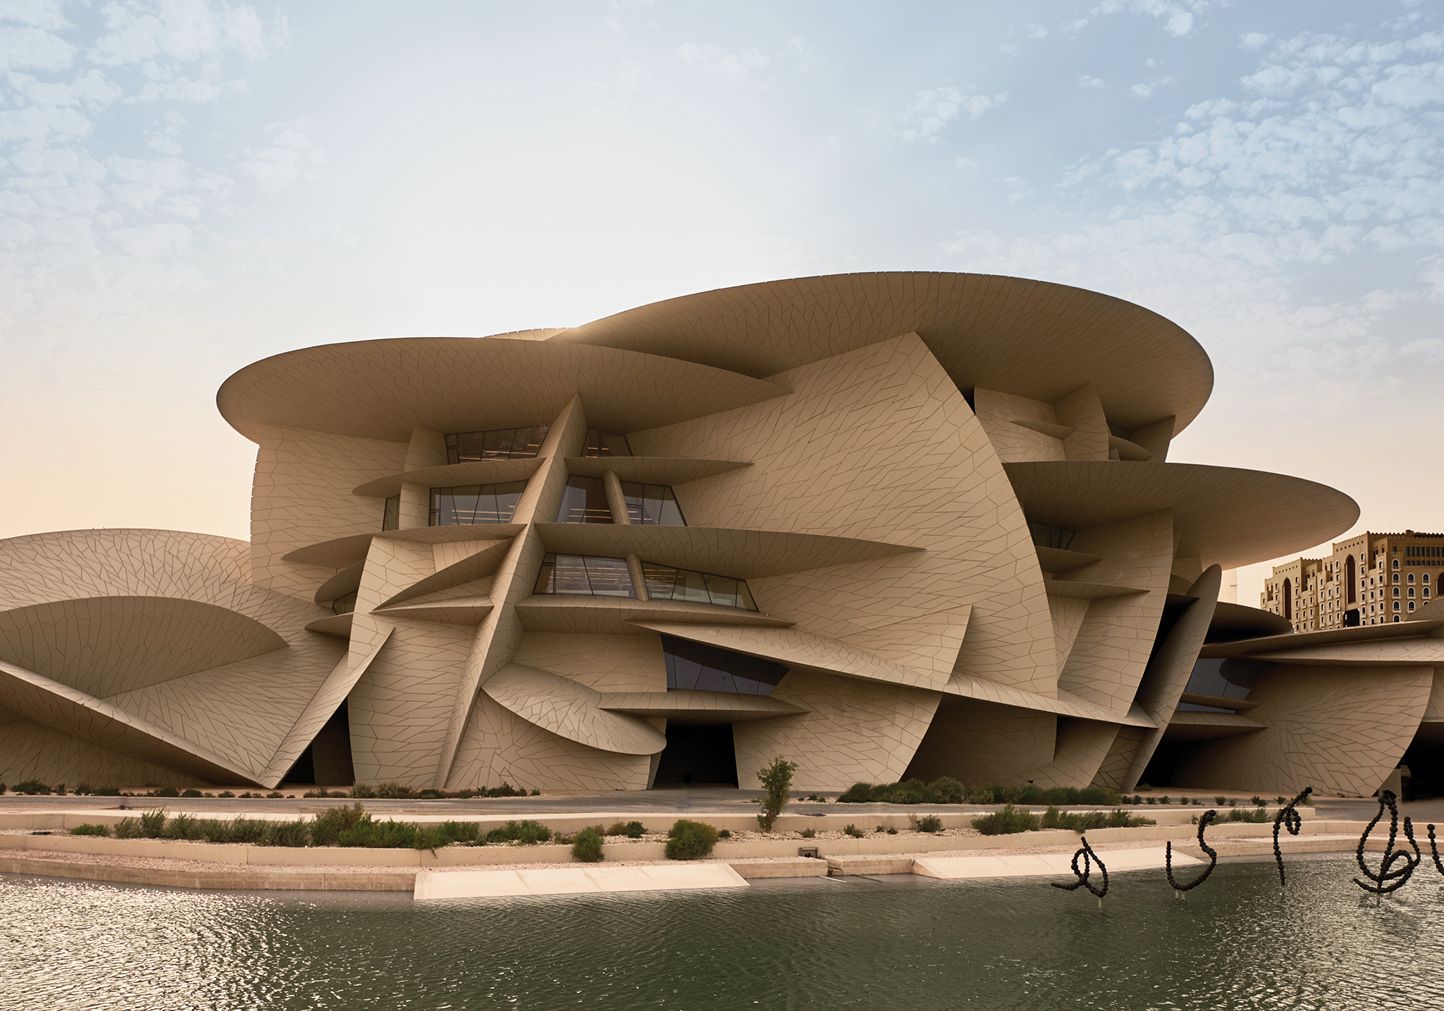 Sửng sốt trước 10 kỳ quan kiến trúc ở Qatar - 1